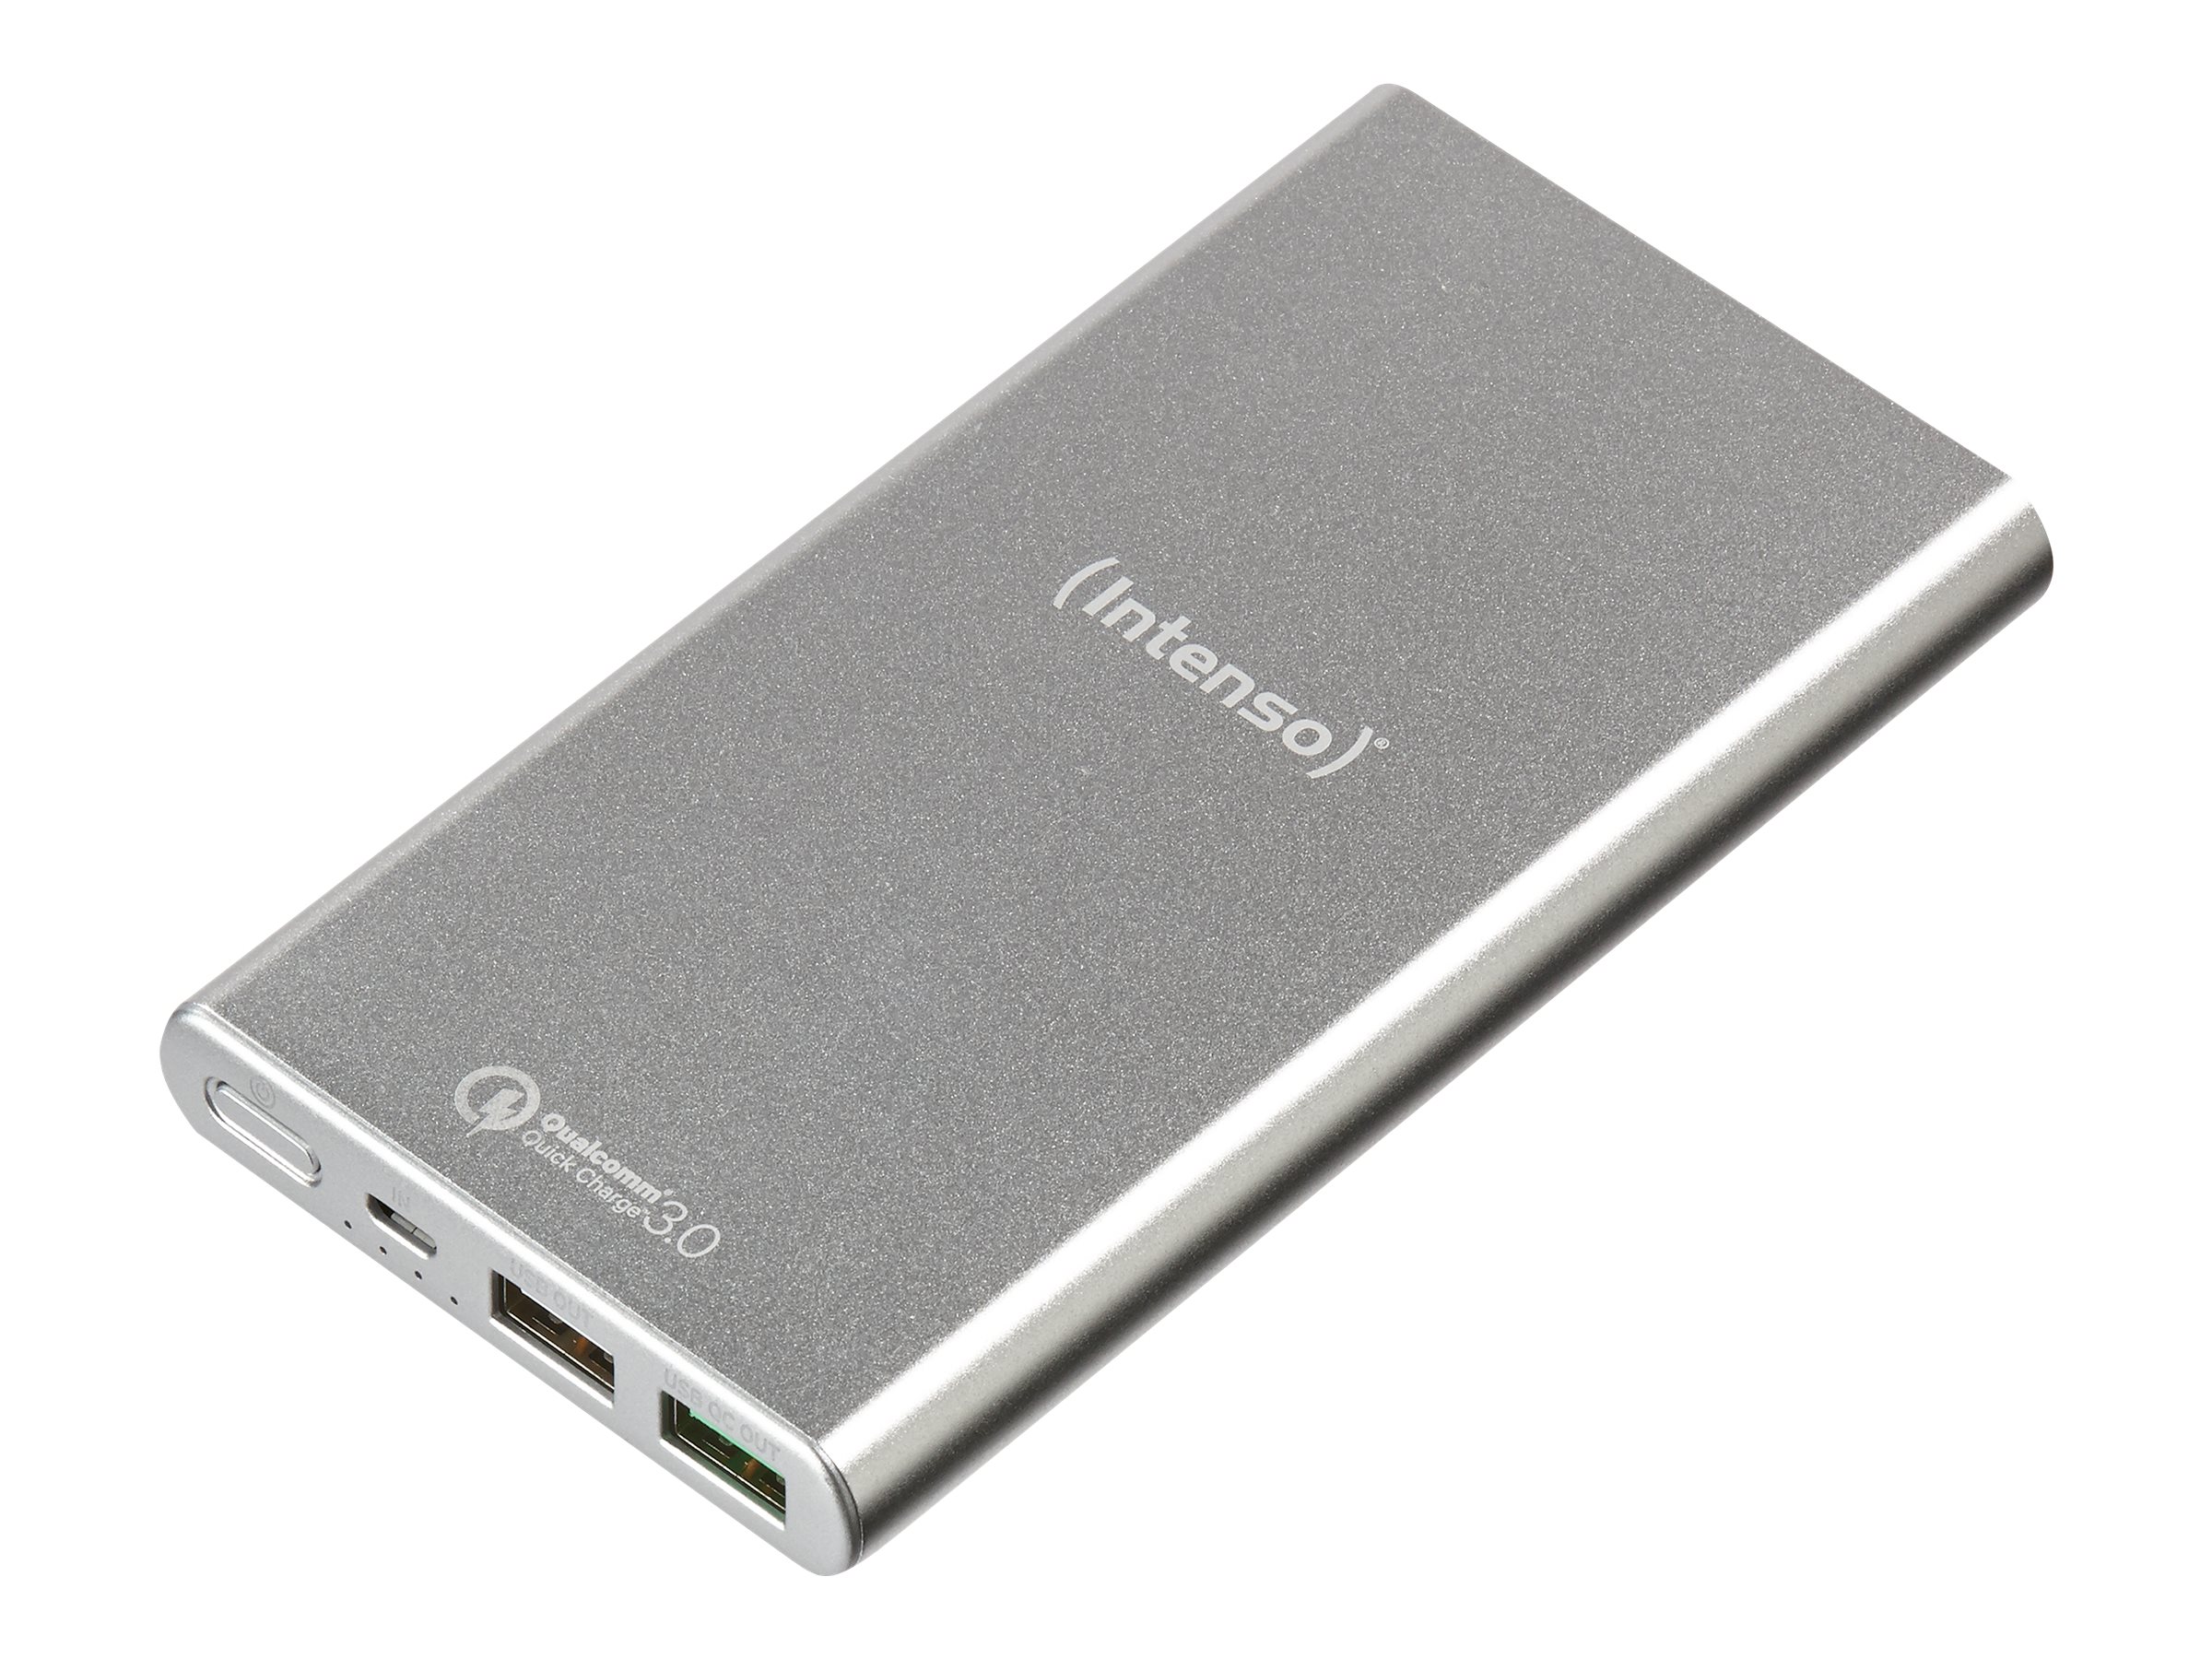 Intenso Powerbank Q10000 - Powerbank - 10000 mAh - 3.1 A - QC 3.0 - 2 Ausgabeanschlussstellen (USB)